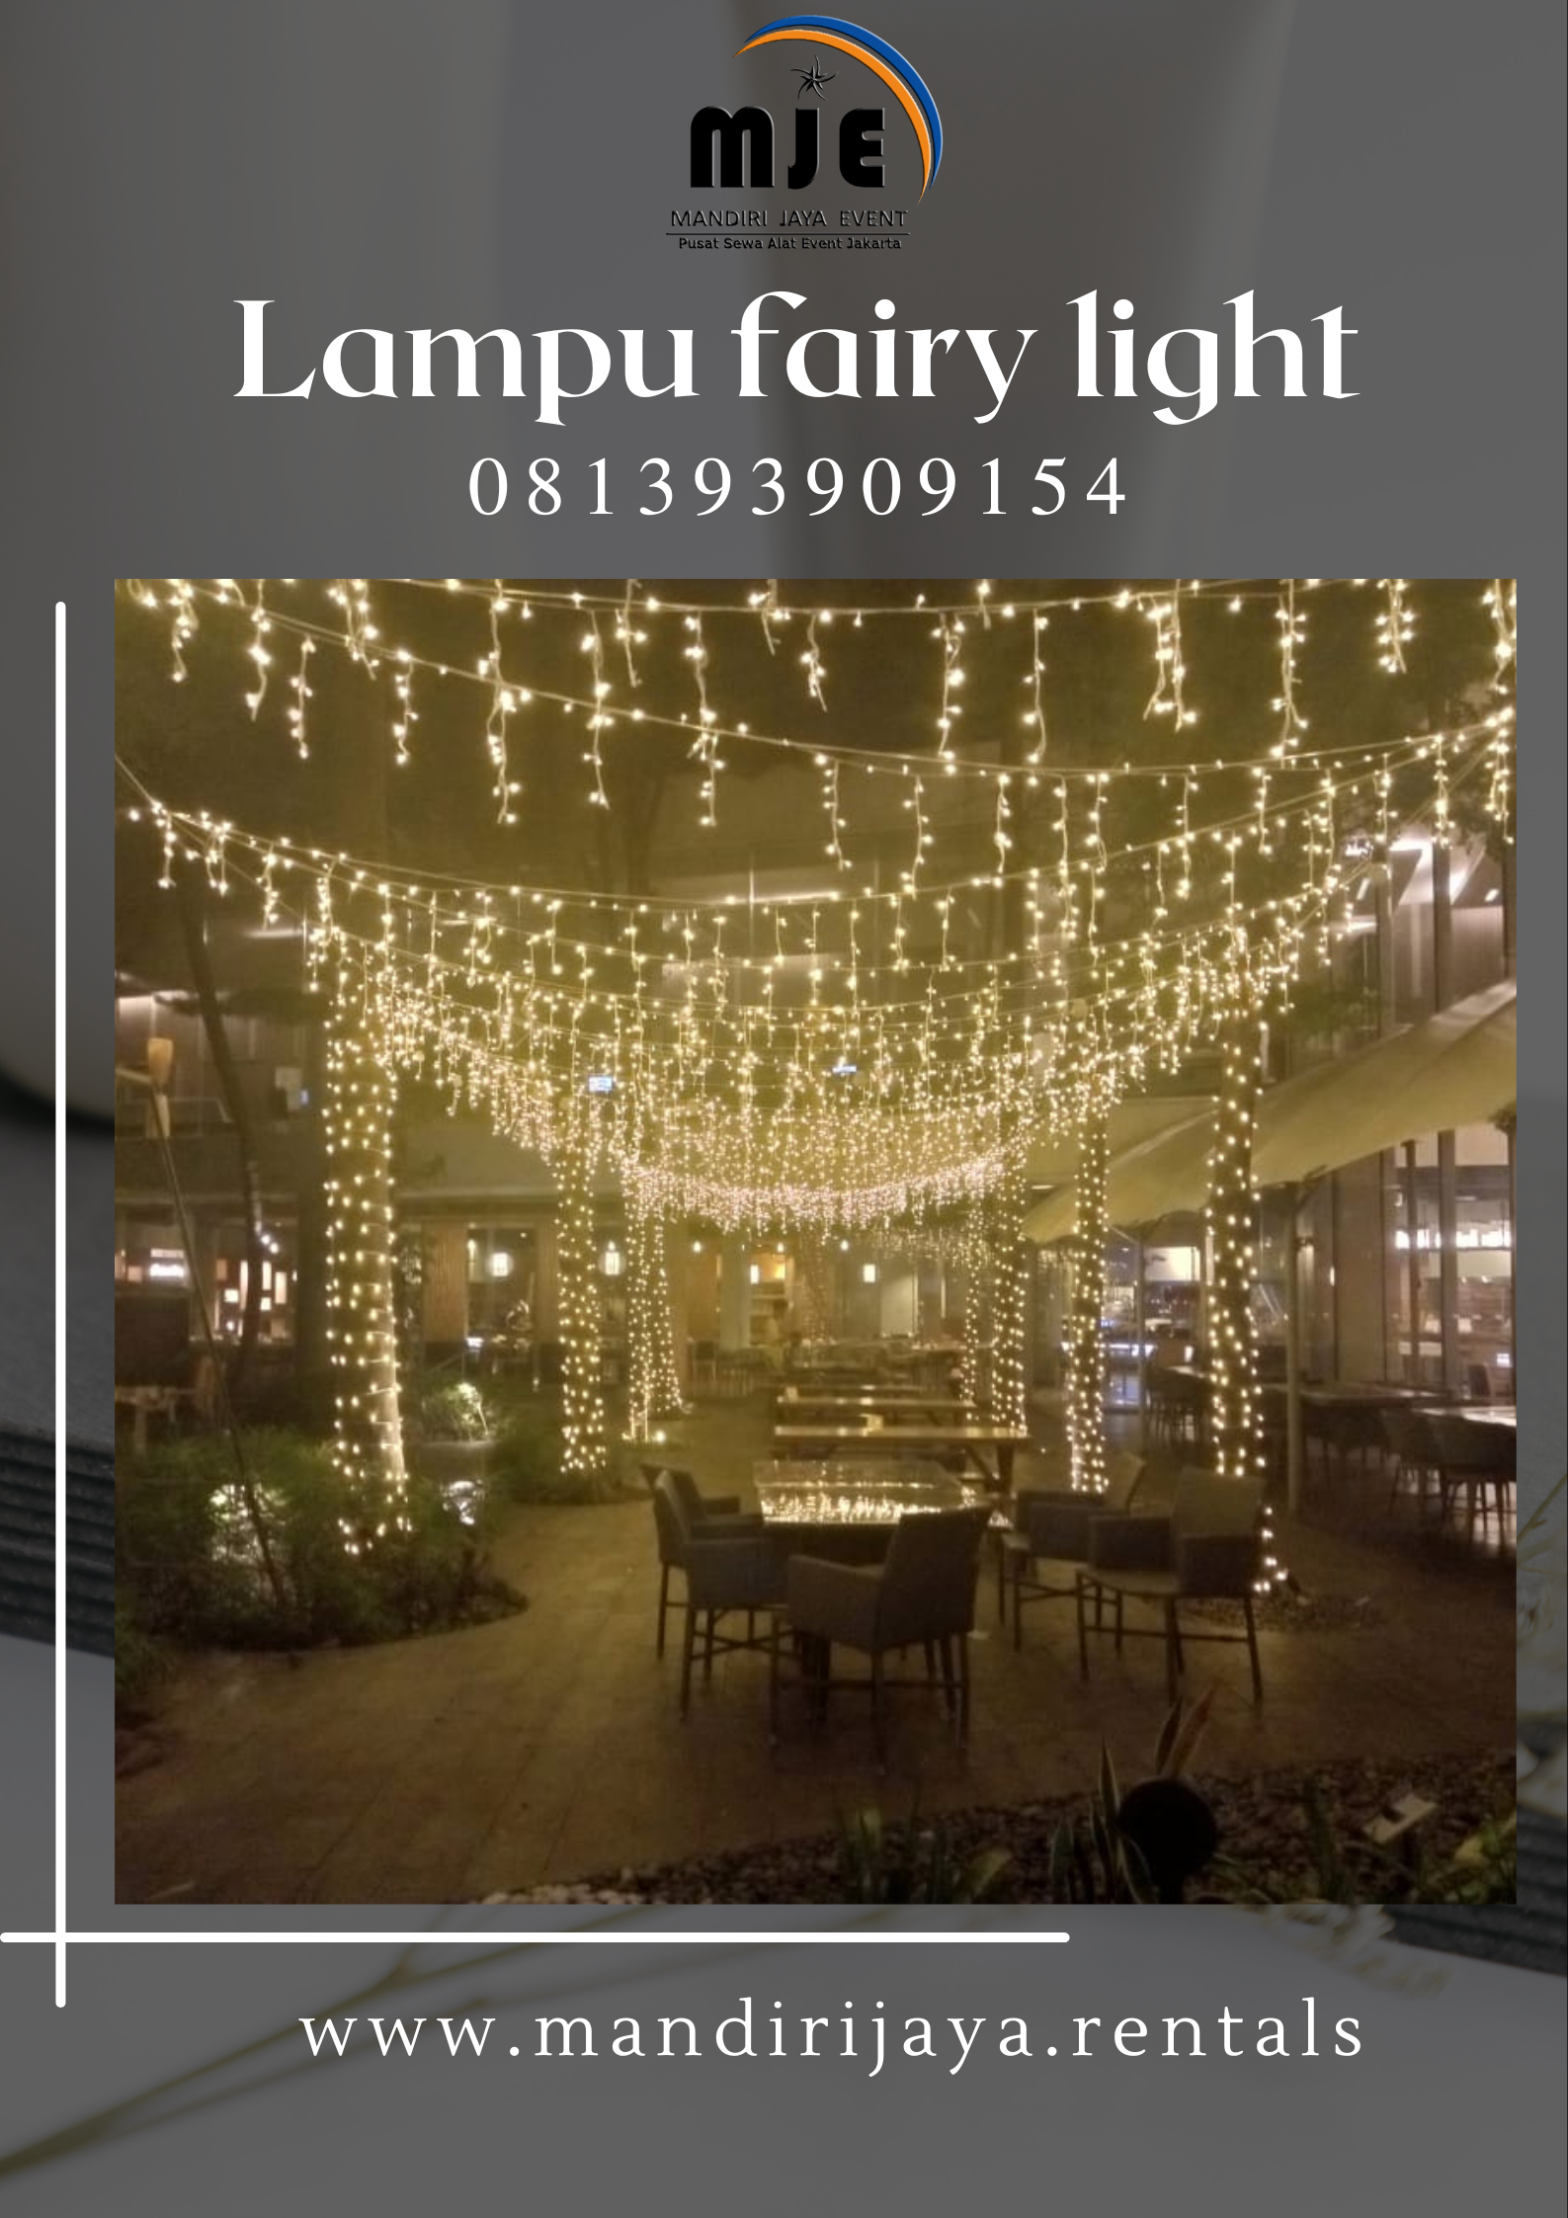 Pusat Sewa Lampu Fairy Light Magelang Jawa Tengah